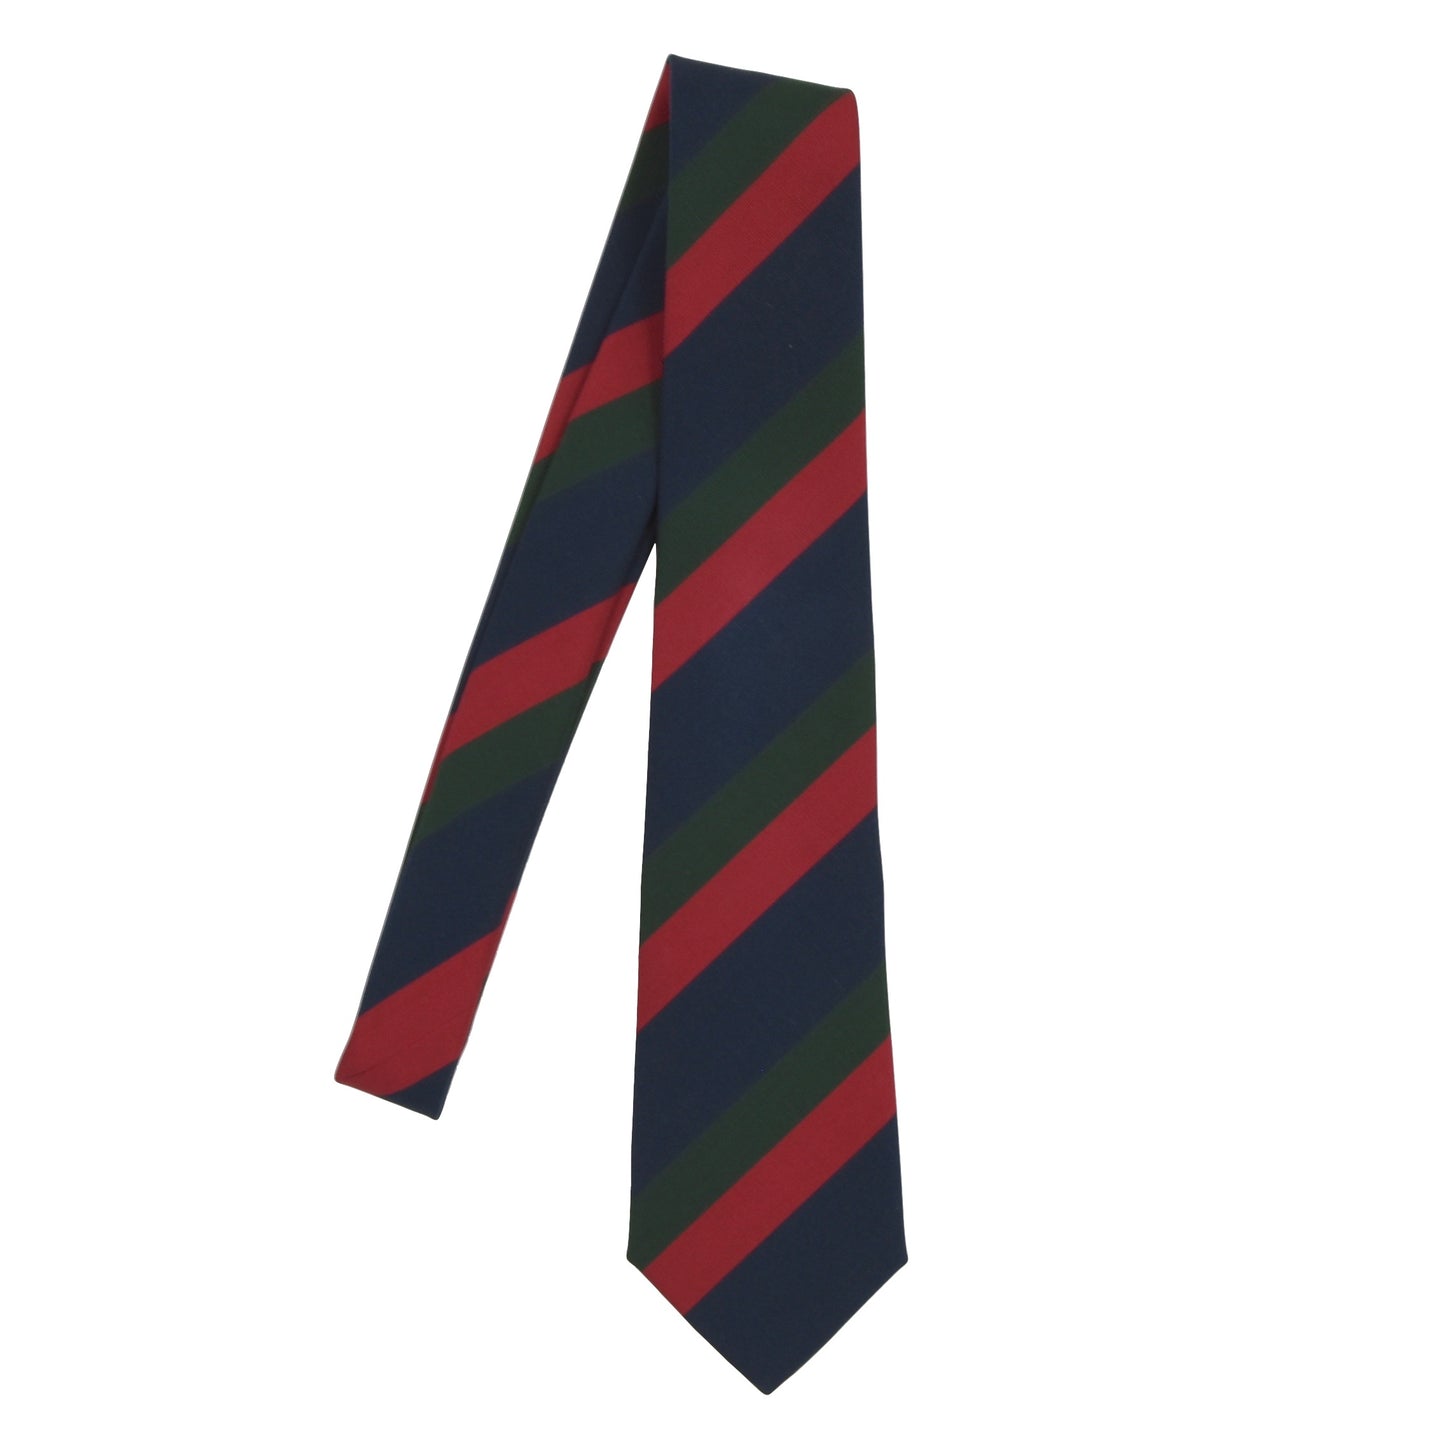 Atkinsons Krawatte aus irischer Popeline, Wolle/Seide, blau/grün/rot gestreift